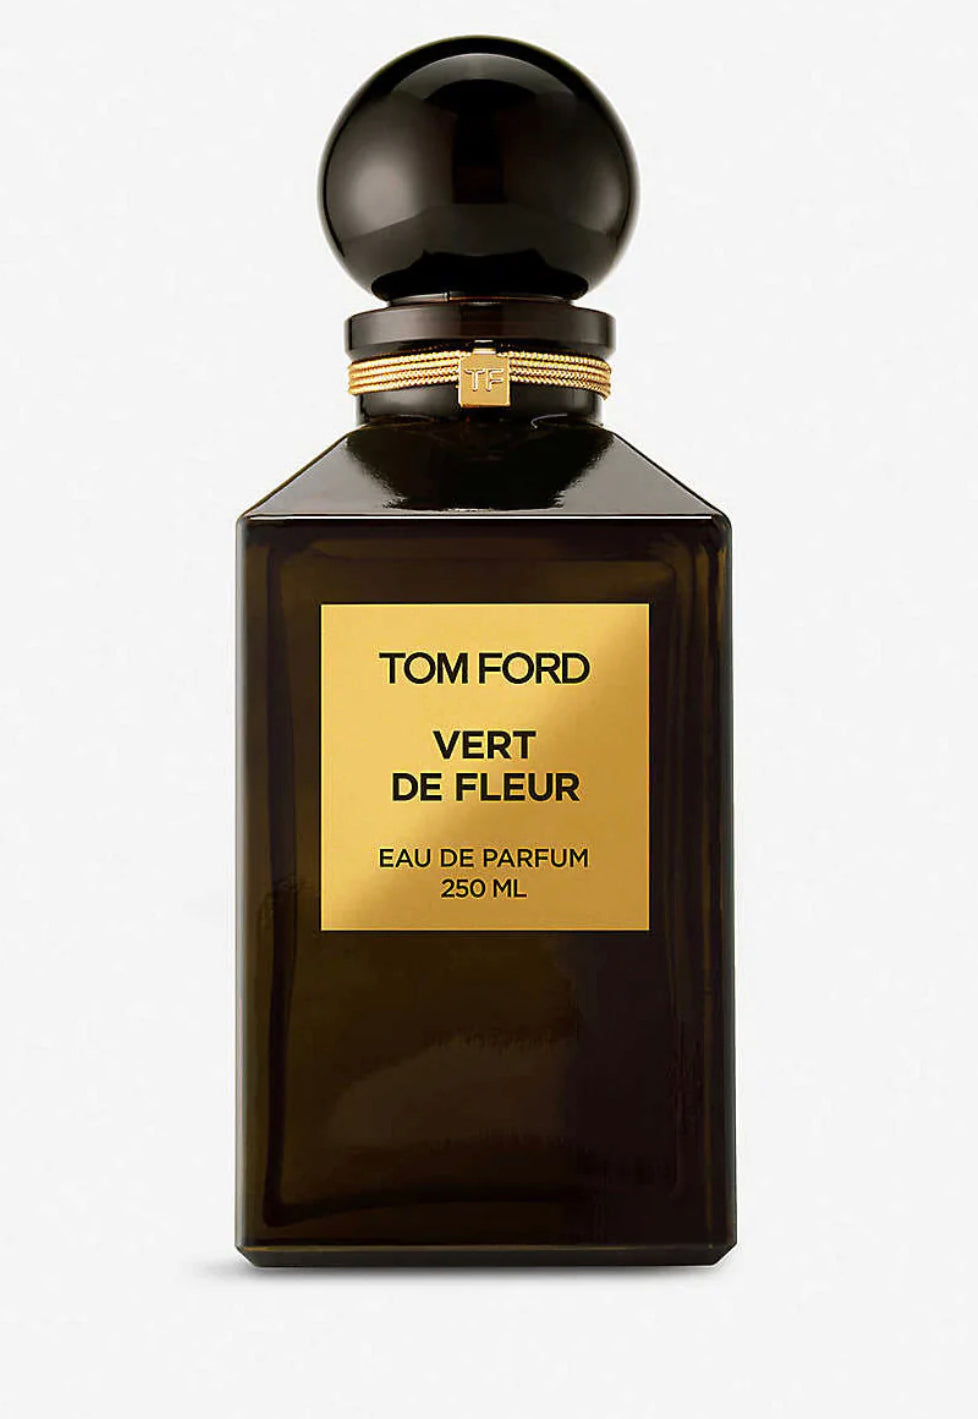 Tom Ford Vert De Fleur Eau De Parfum Samples